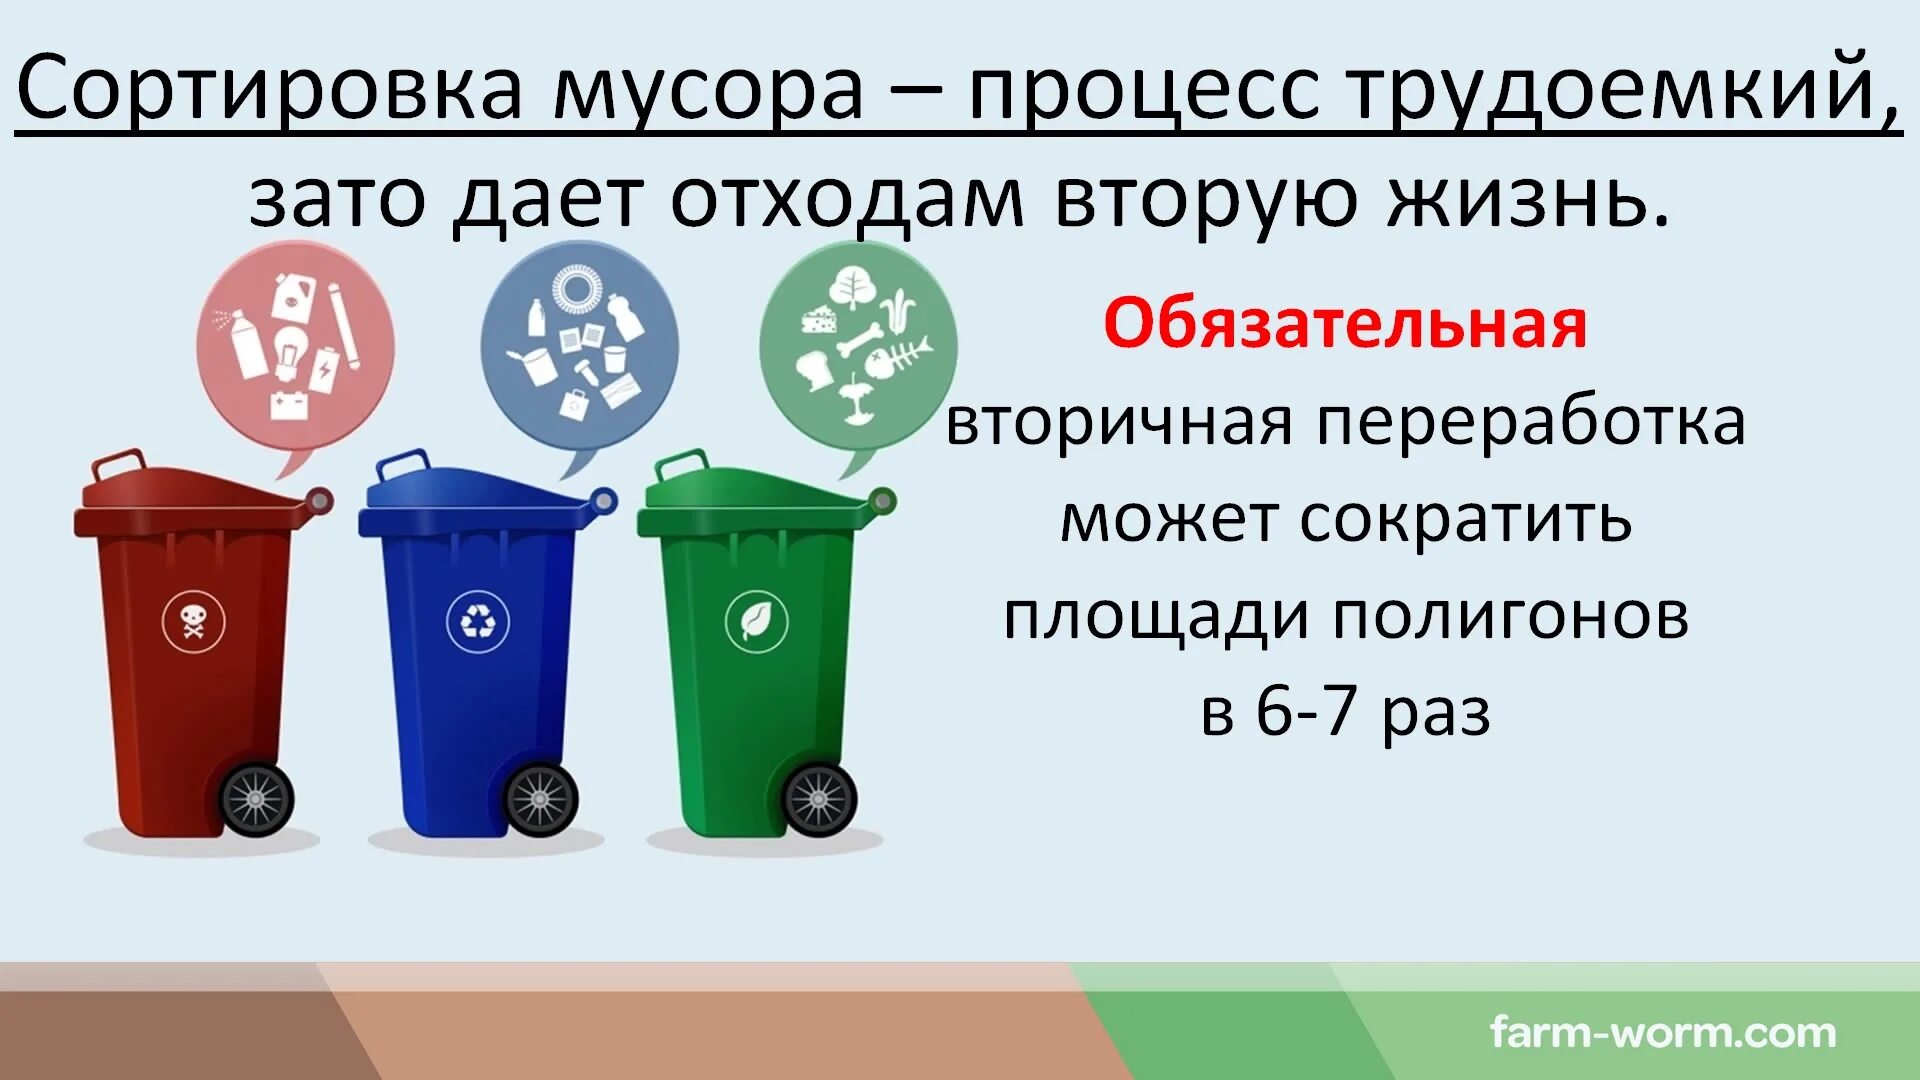 Классификация утилизации отходов. Типы бытовых отходов. Типы мусорных отходов. Виды мусорок